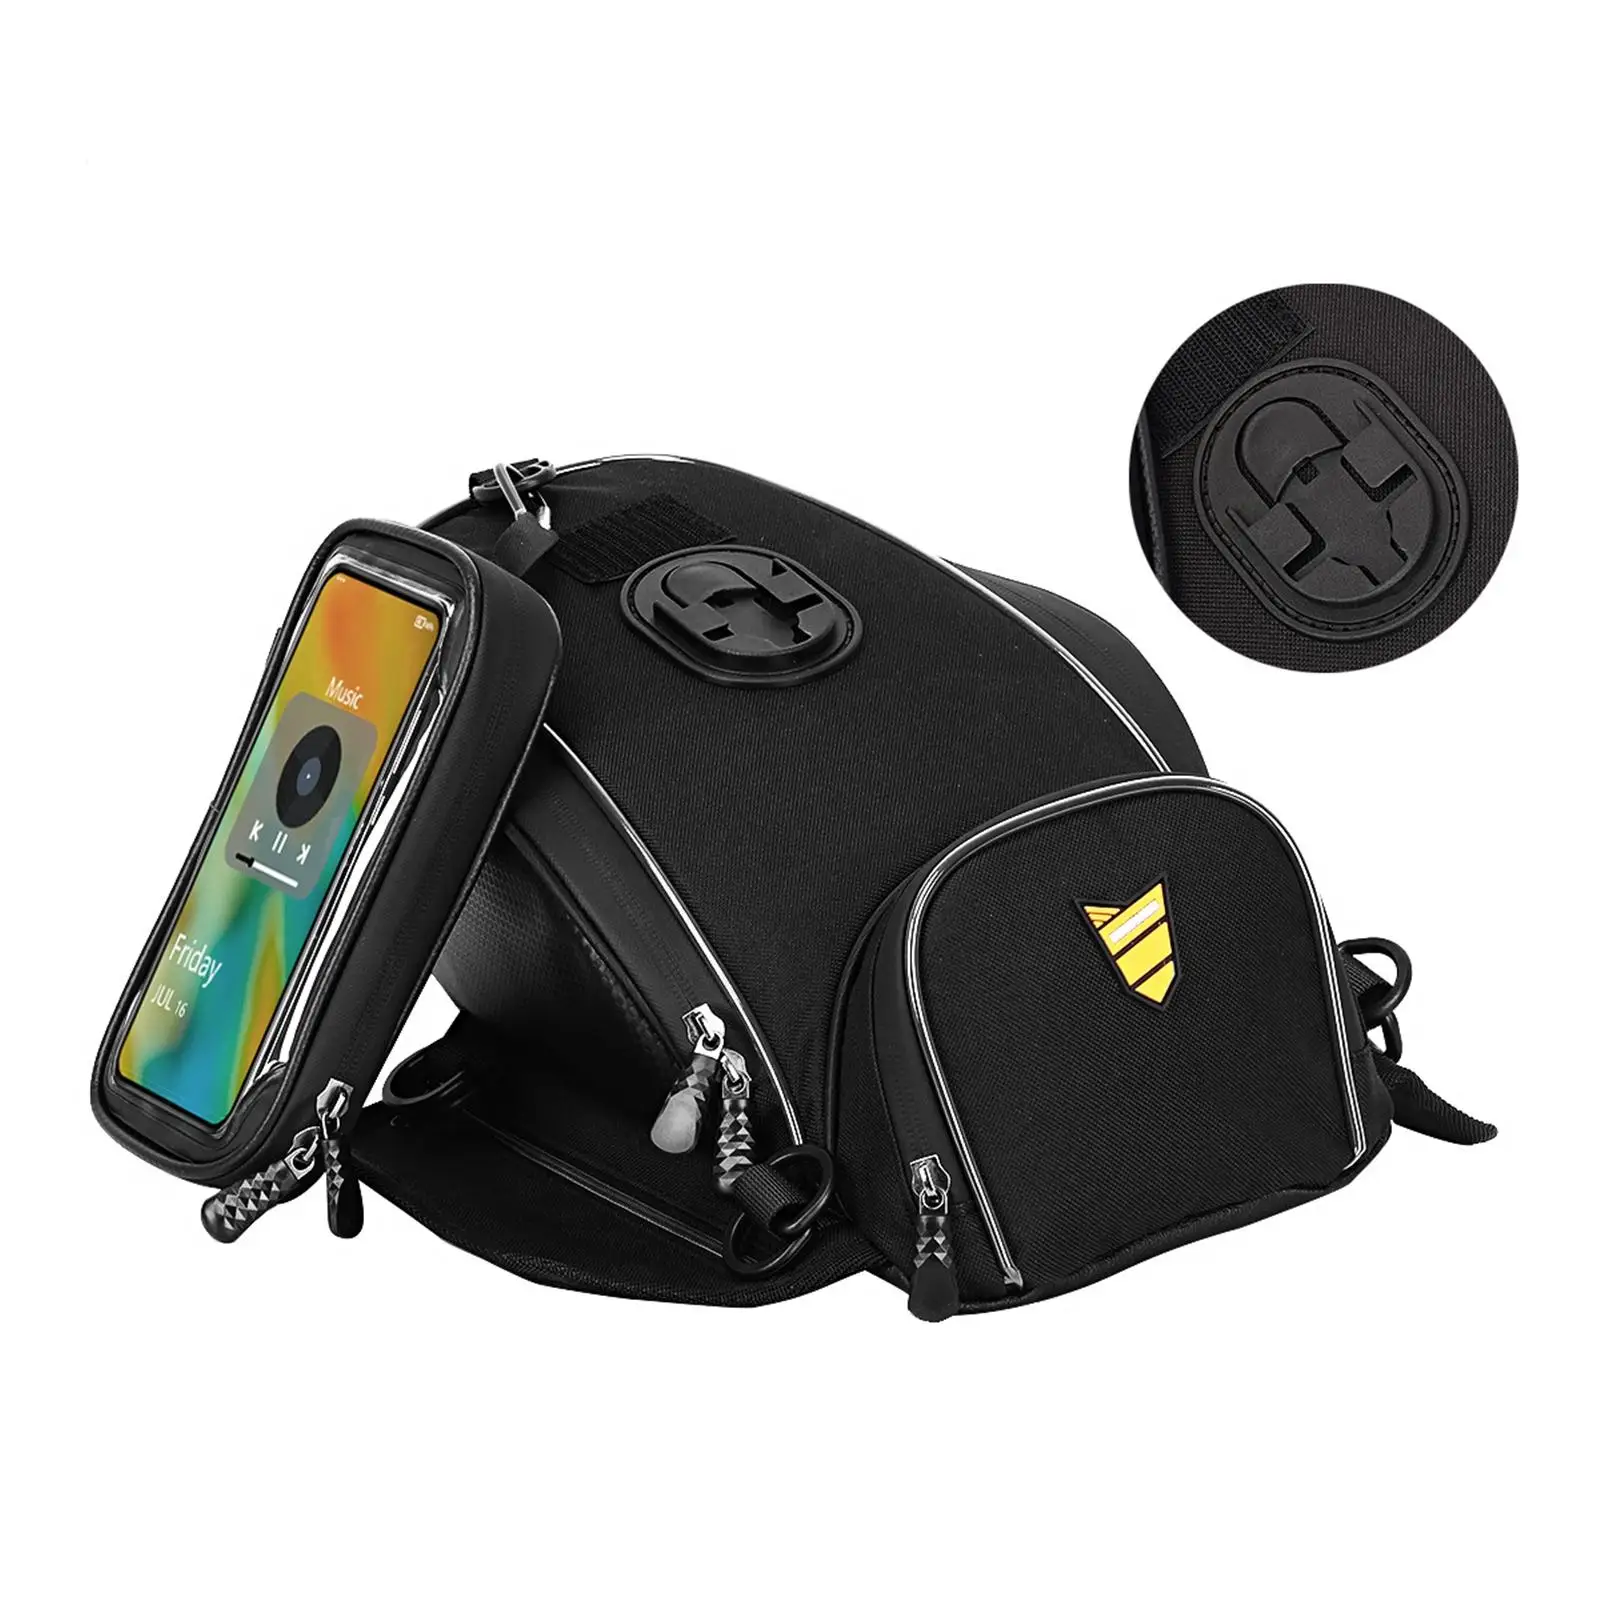 Motorcycle Phone Navigation Tank Storage Bag Waterproof Accessories wear Resistant Practical Durable Black Strap Mount